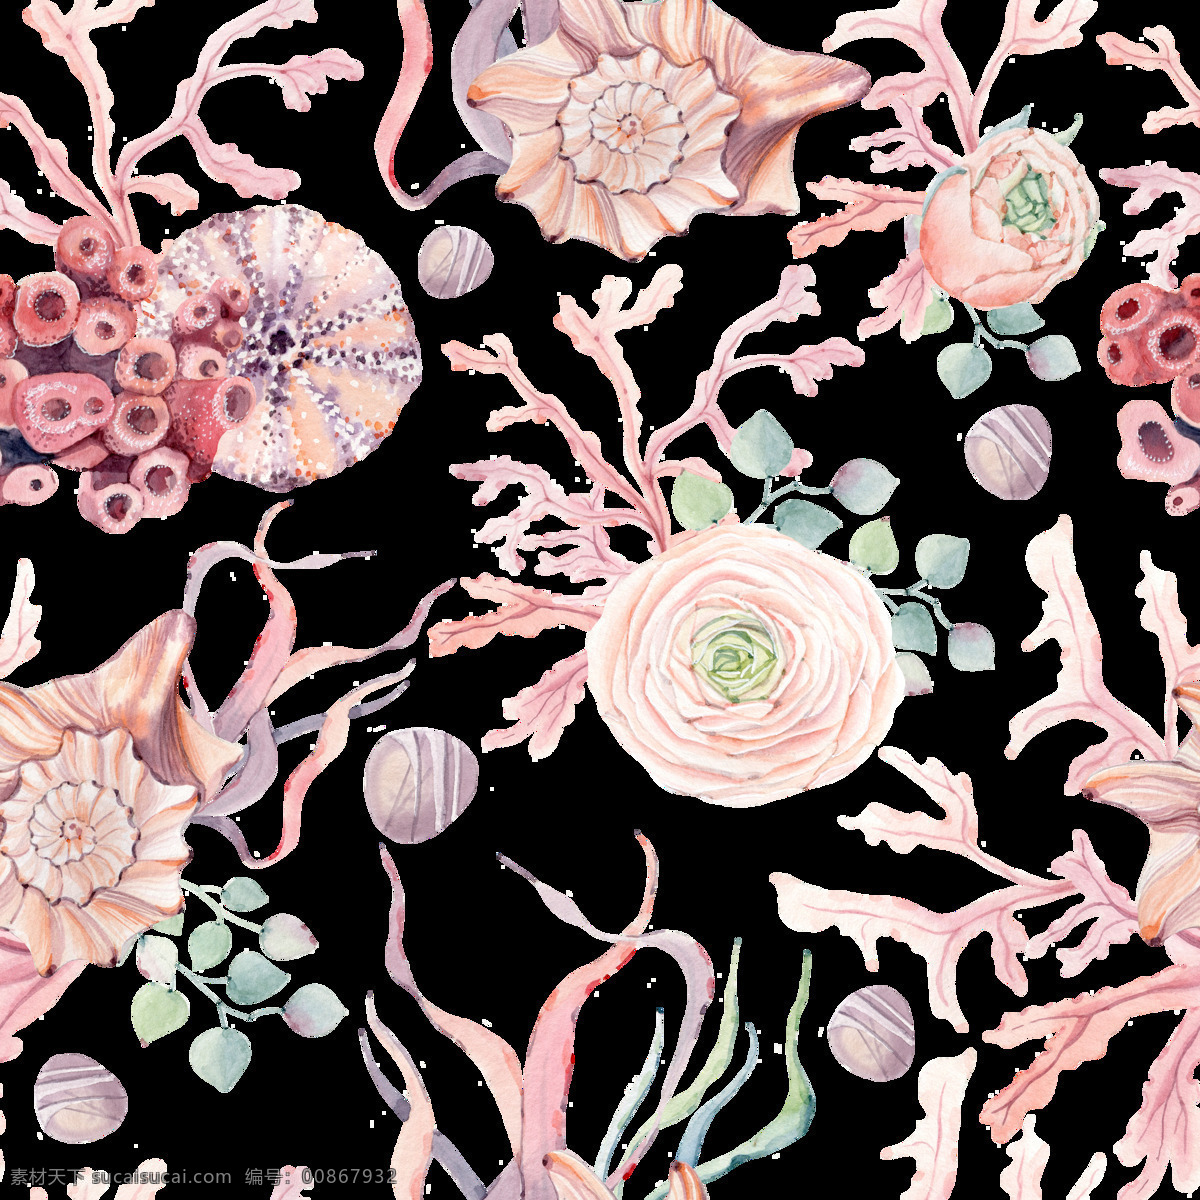 手绘 粉红色 海螺 背景 背景素材 鹅暖石 粉色 花卉 平铺背景 珊瑚 叶子